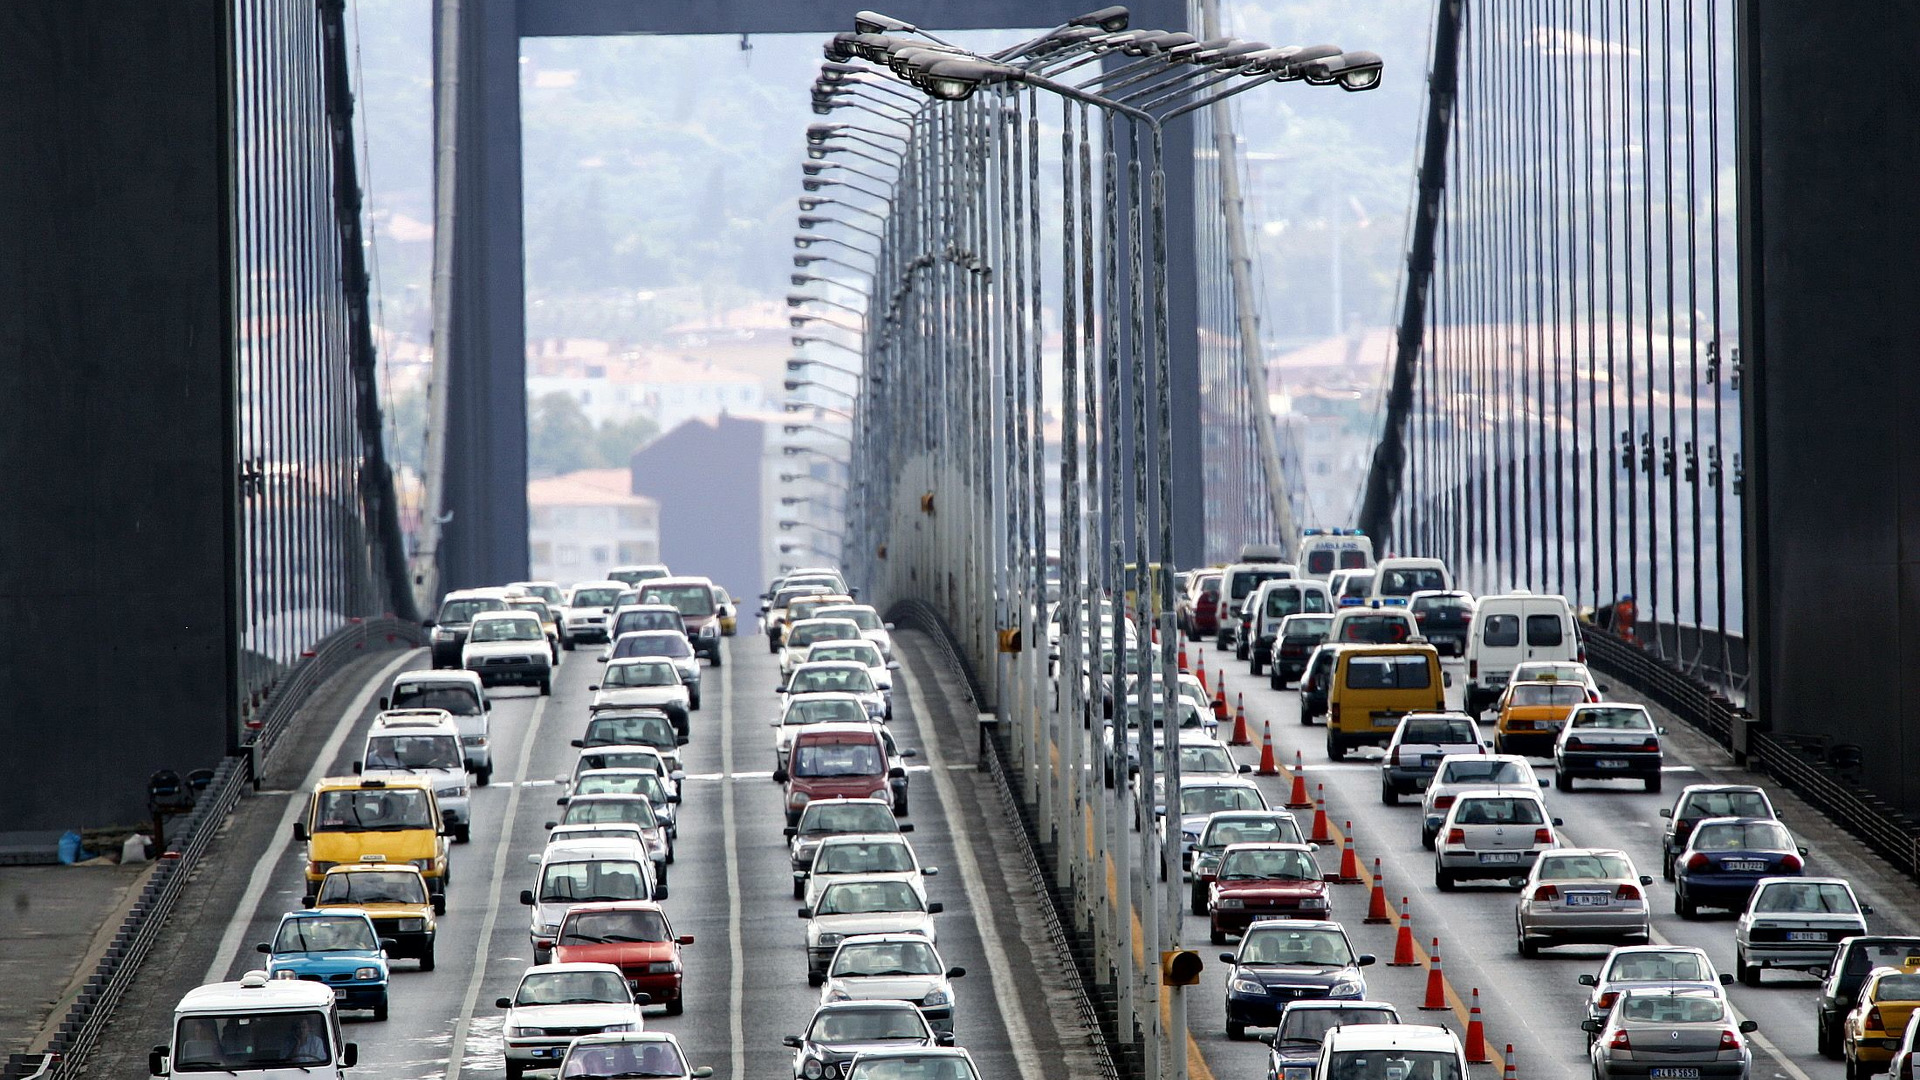 İstanbul'da trafik kazalarının yoğun olduğu kara noktalar belirlendi